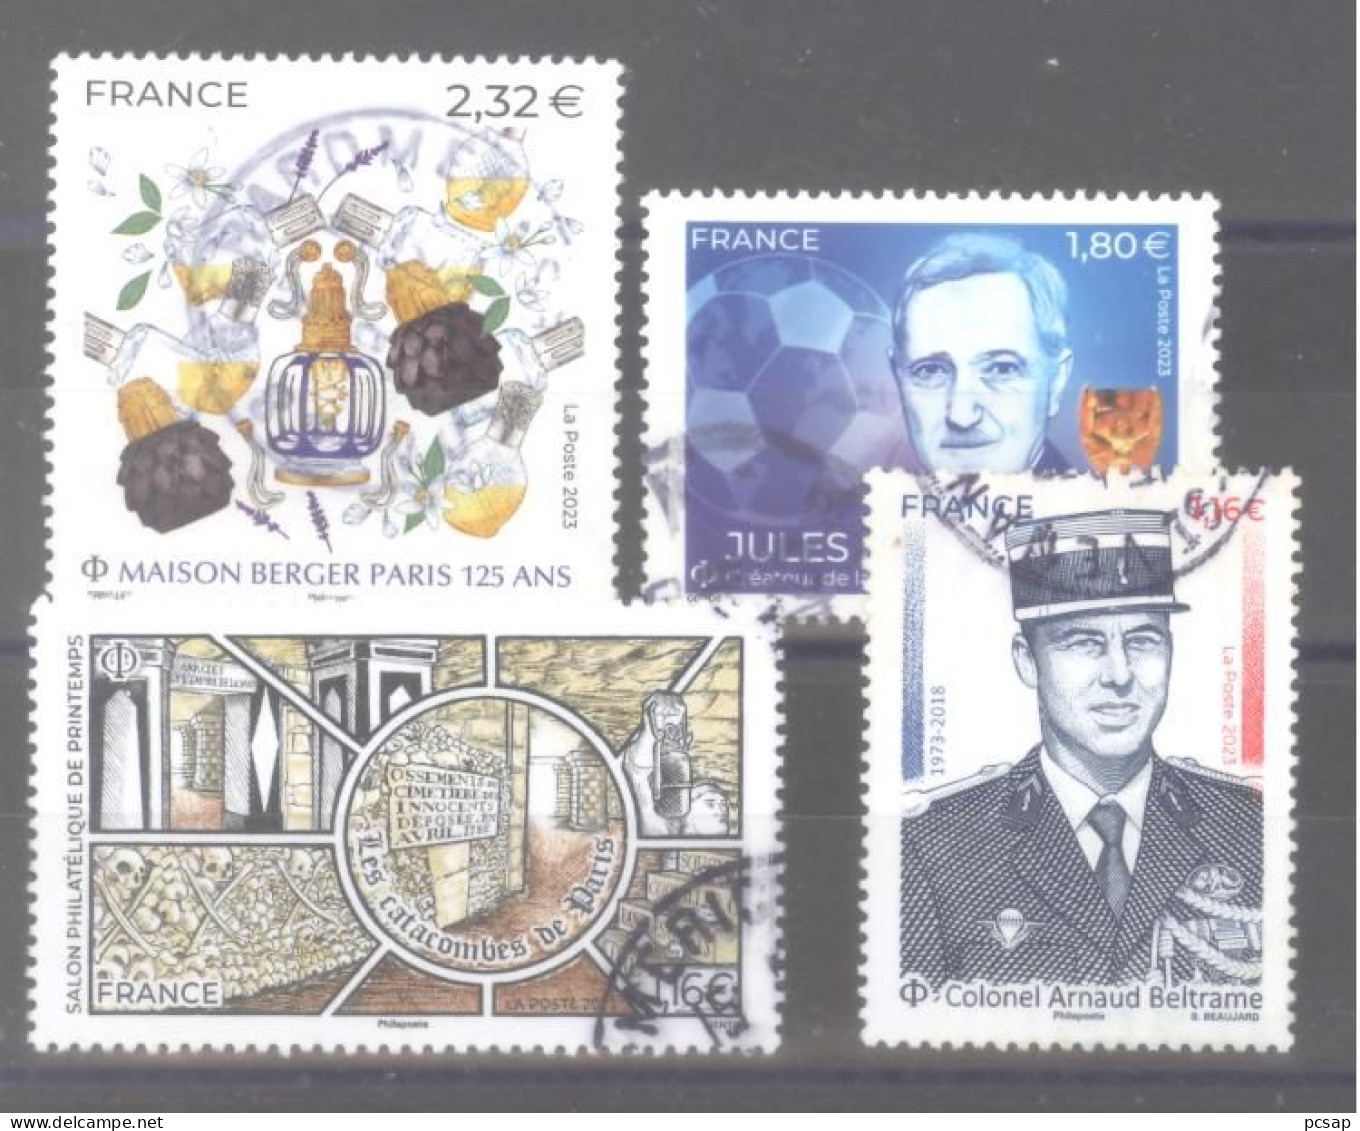 France Oblitérés : Jules Rimet N° 5719 - N° 5661 - 5663 & 5709 (cachet Rond) - Used Stamps